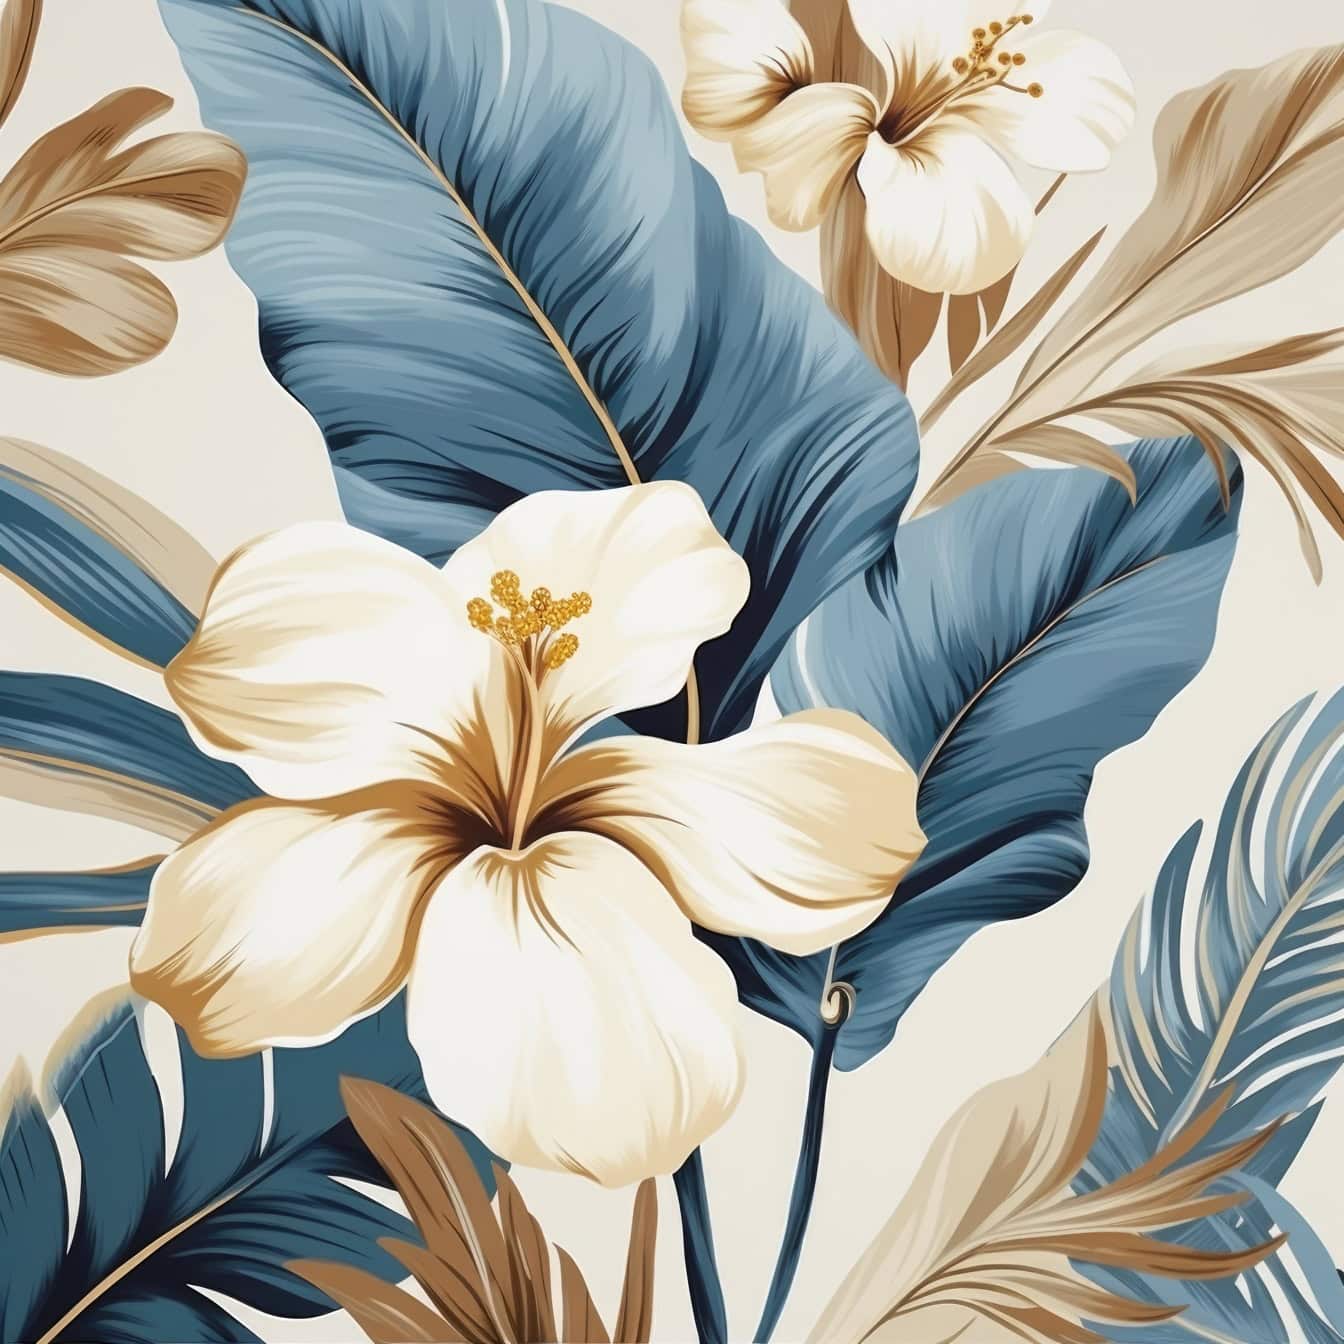 Ilustrație grafică florală a florilor și frunzelor de crin în tonuri pastelate de albastru și gălbui decolorate